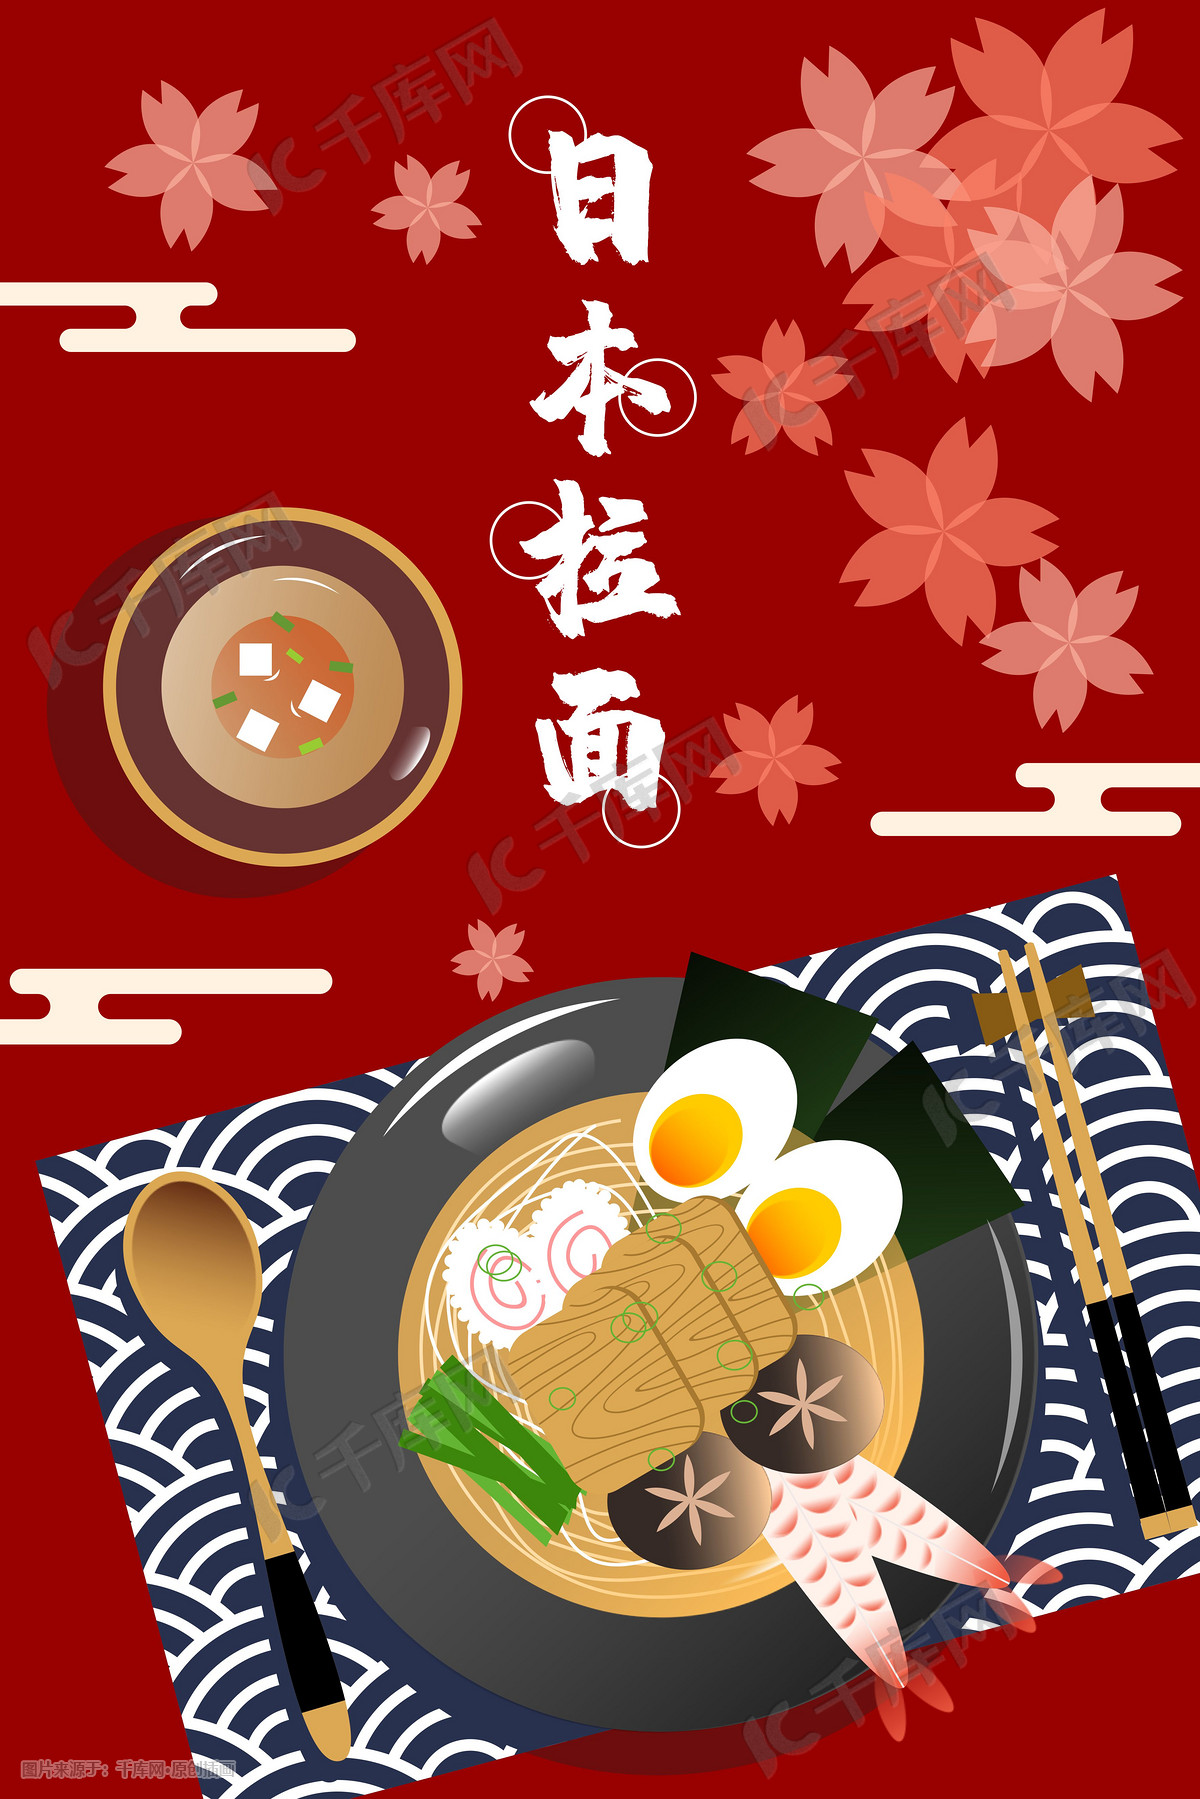 吃拉面的日本动画片厨师 向量例证. 插画 包括有 图画, 烹饪, 聚会所, 餐馆, 菜单, 主厨, 享用 - 103105487